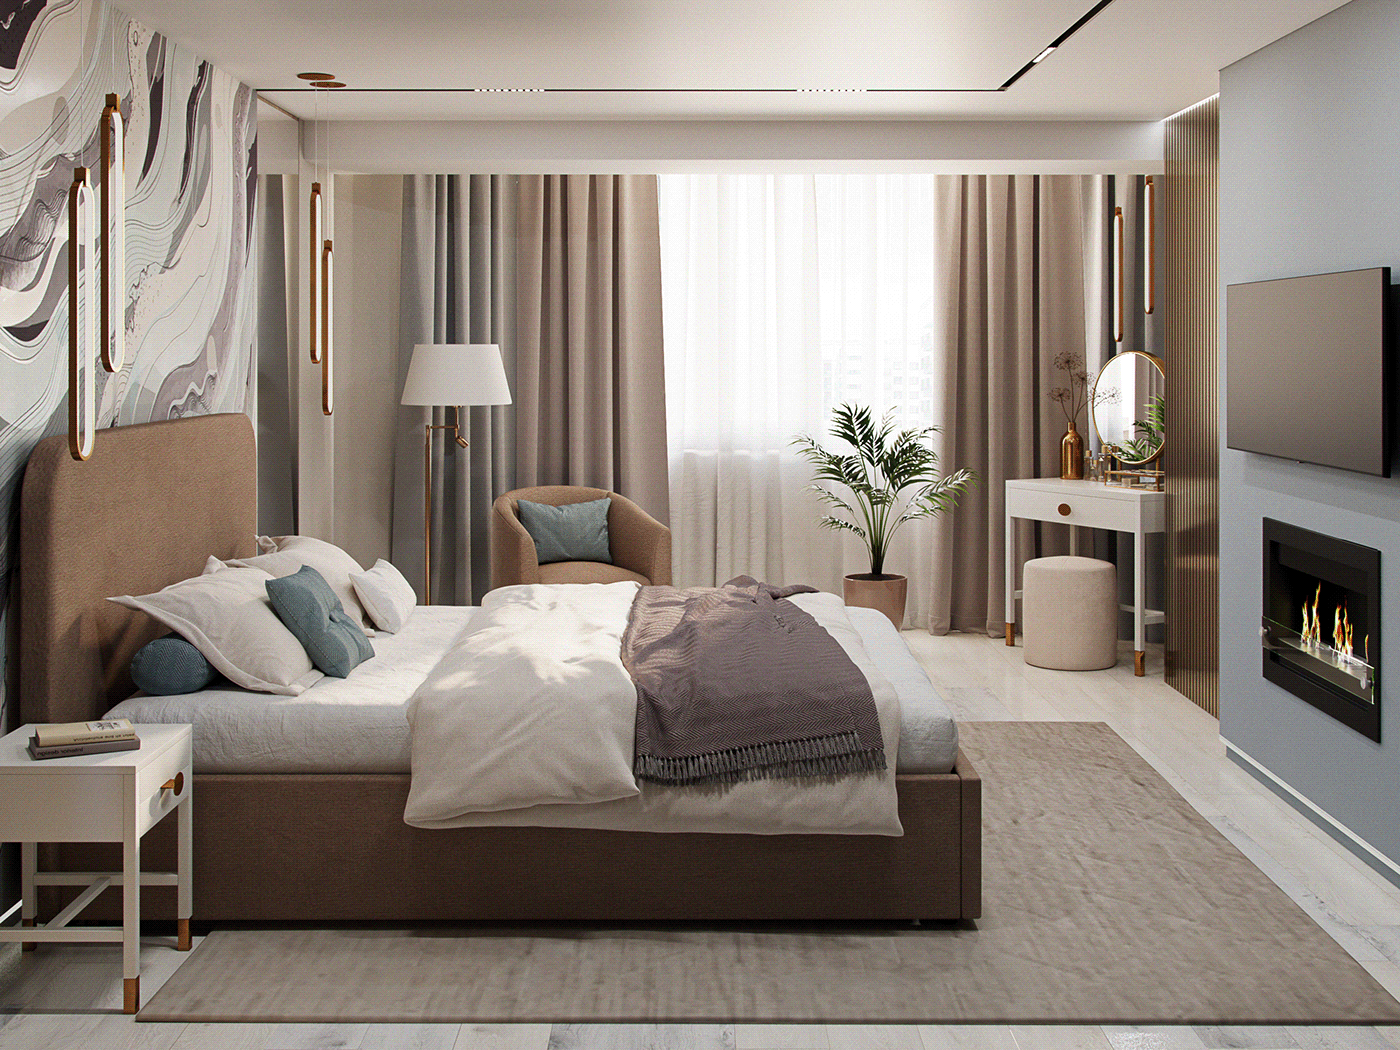 дизайн интерьера visualization визуализация спальня кровати мягкая мебель